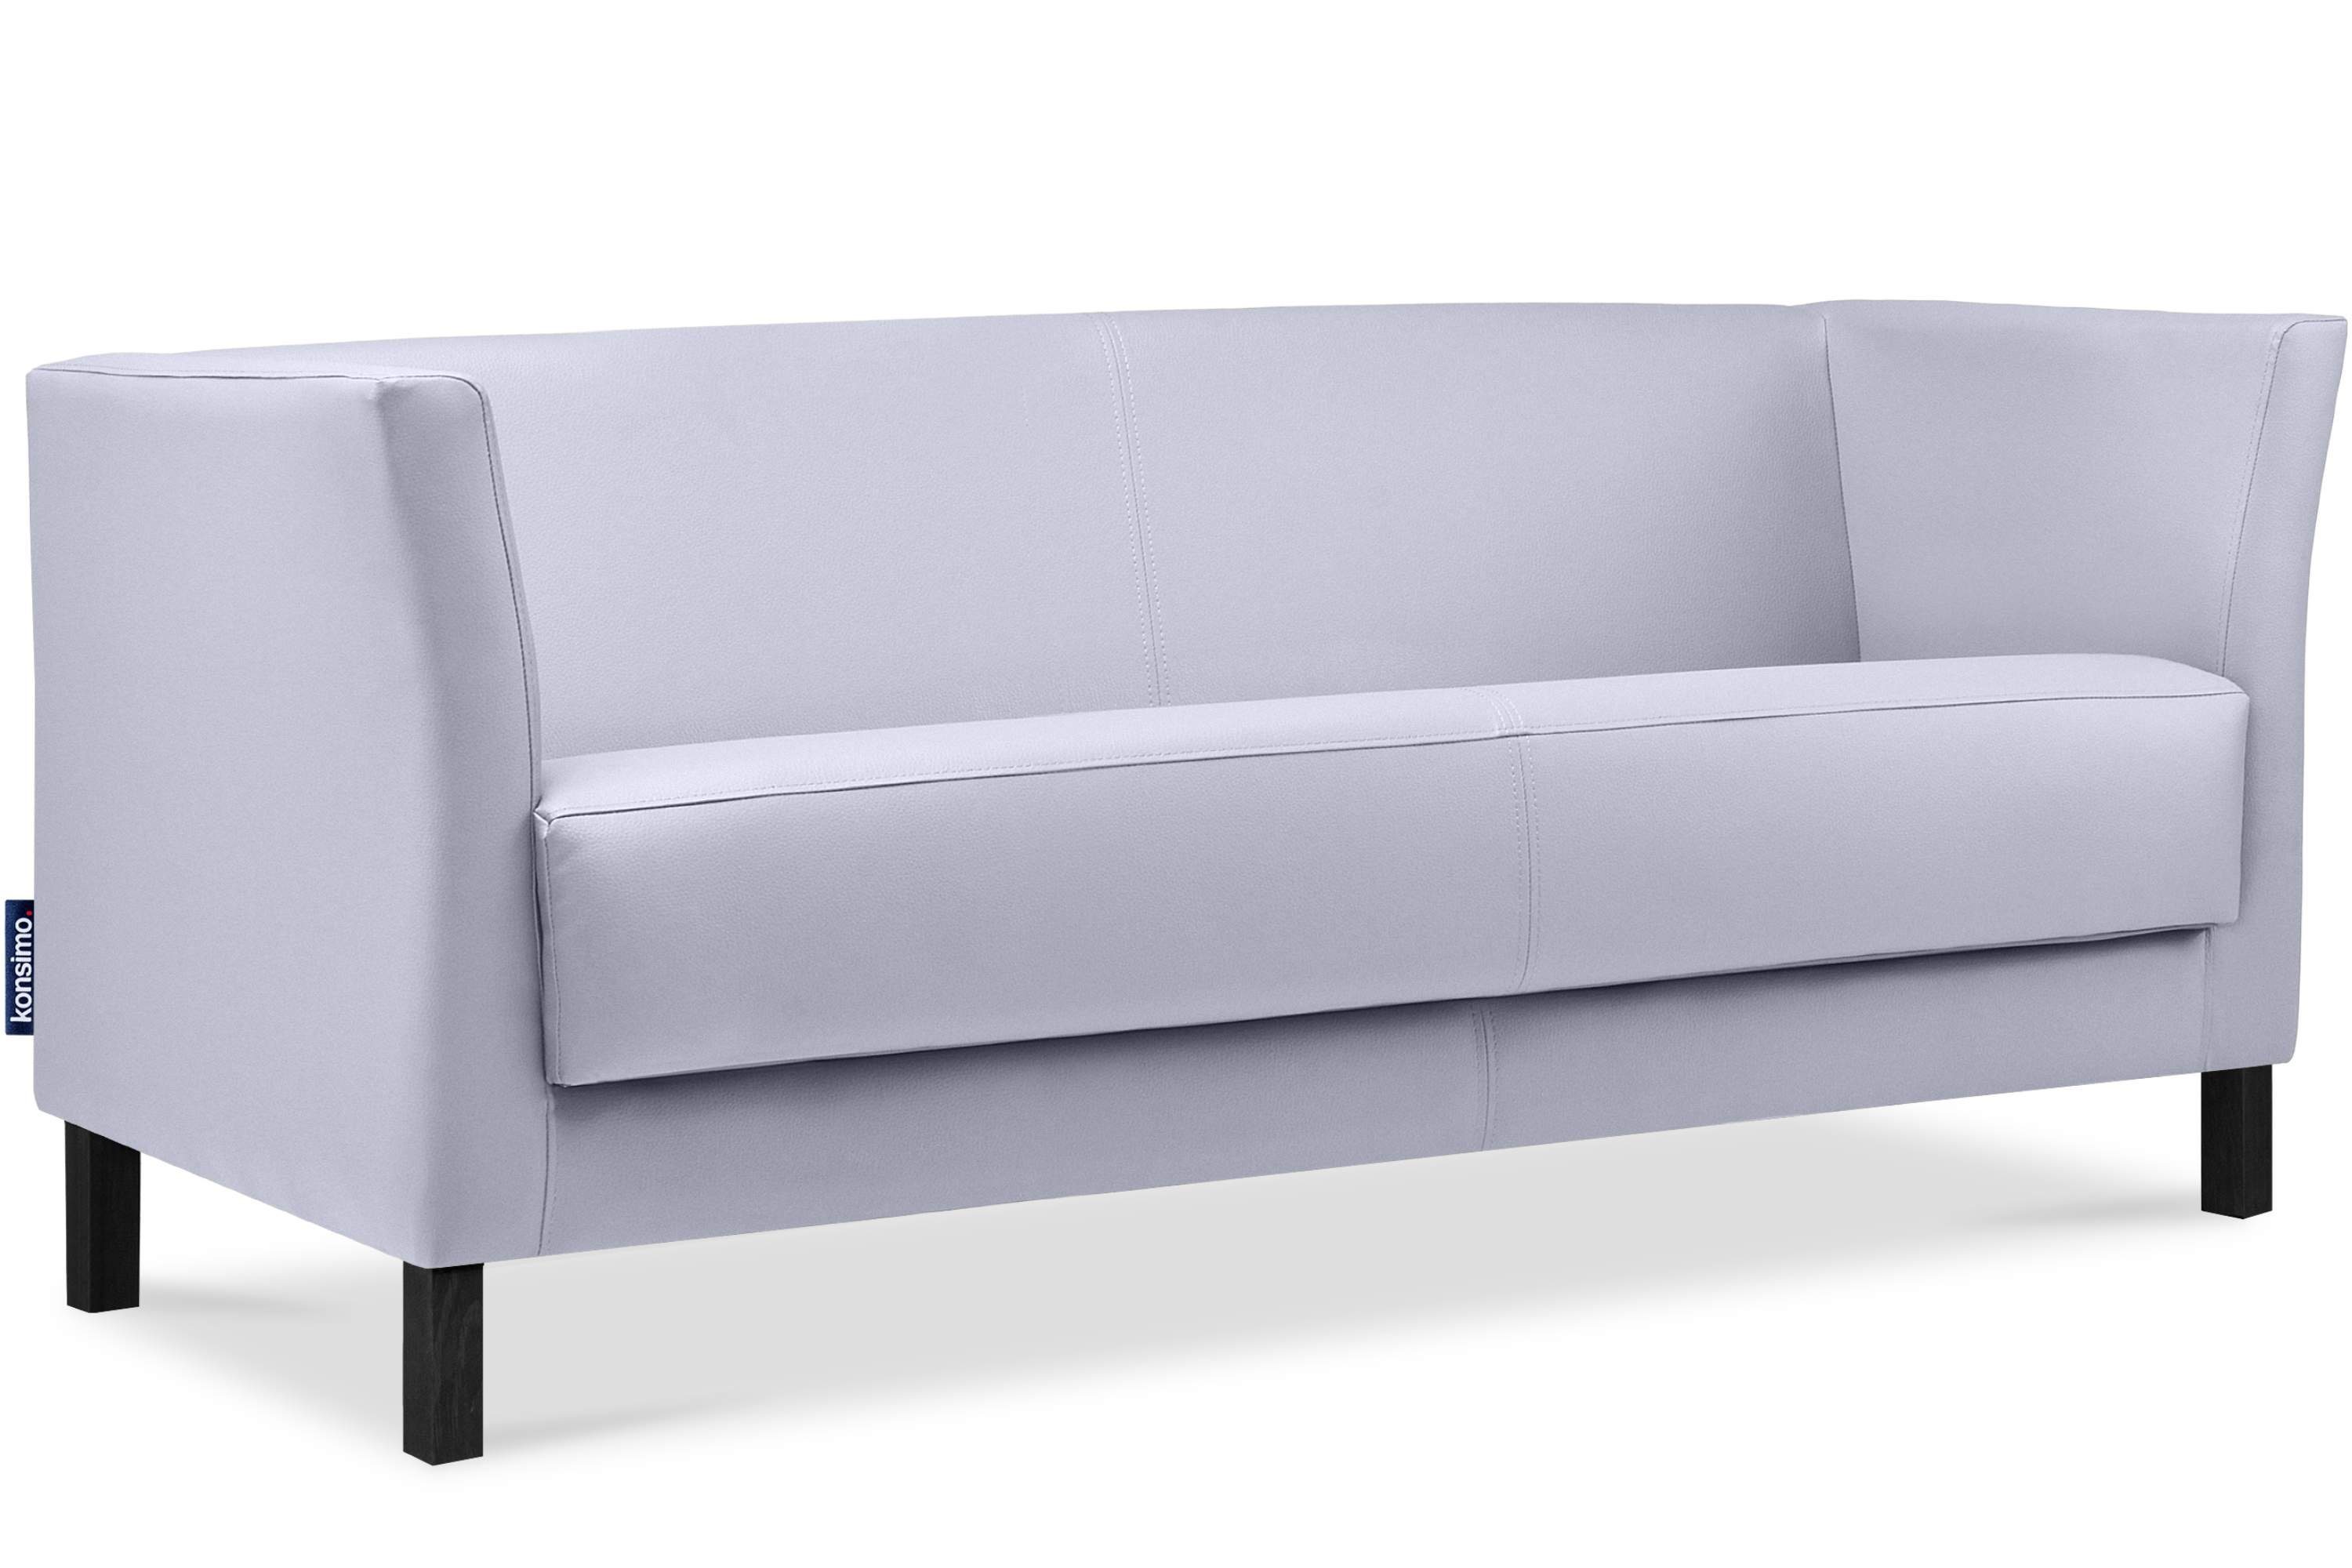 Sitzfläche 1 Teile, Sofa grau hohe Beine, ESPECTO | grau weiche Kunstleder 3 und hohe Rückenlehne, Sofa Sitzer, Konsimo